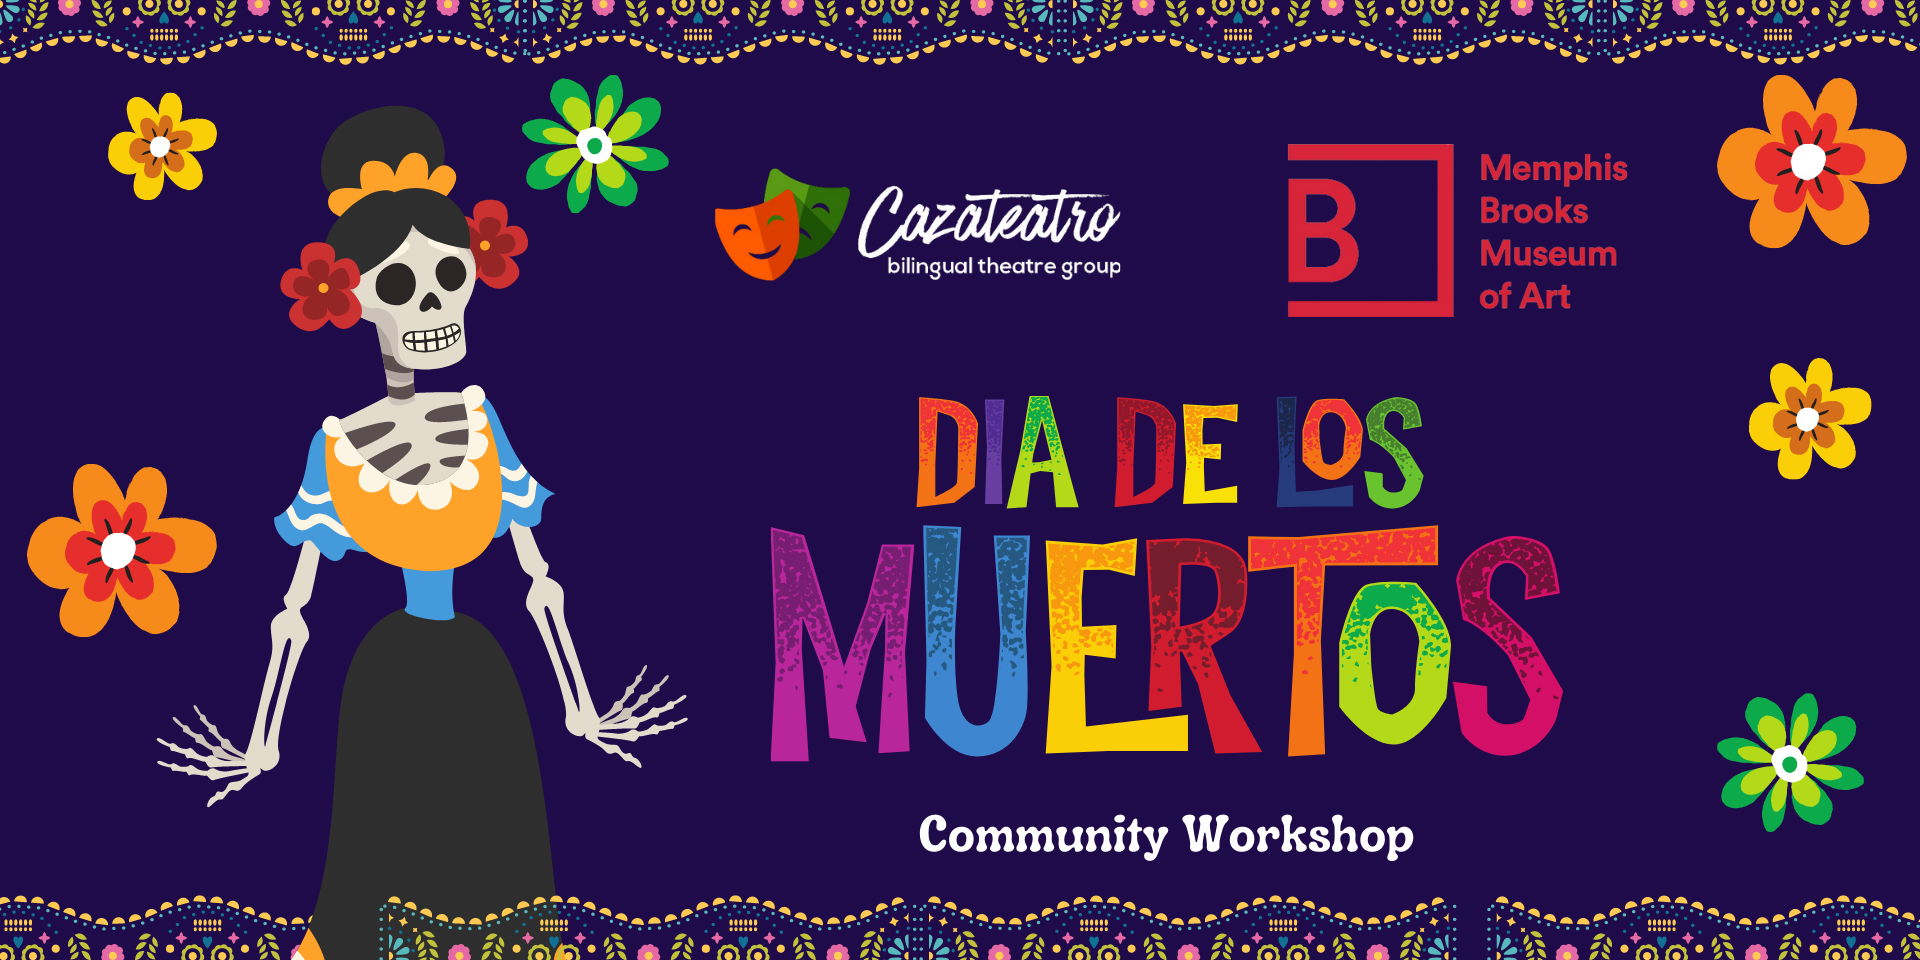 Dia de los Muertos Community Workshop promotional image